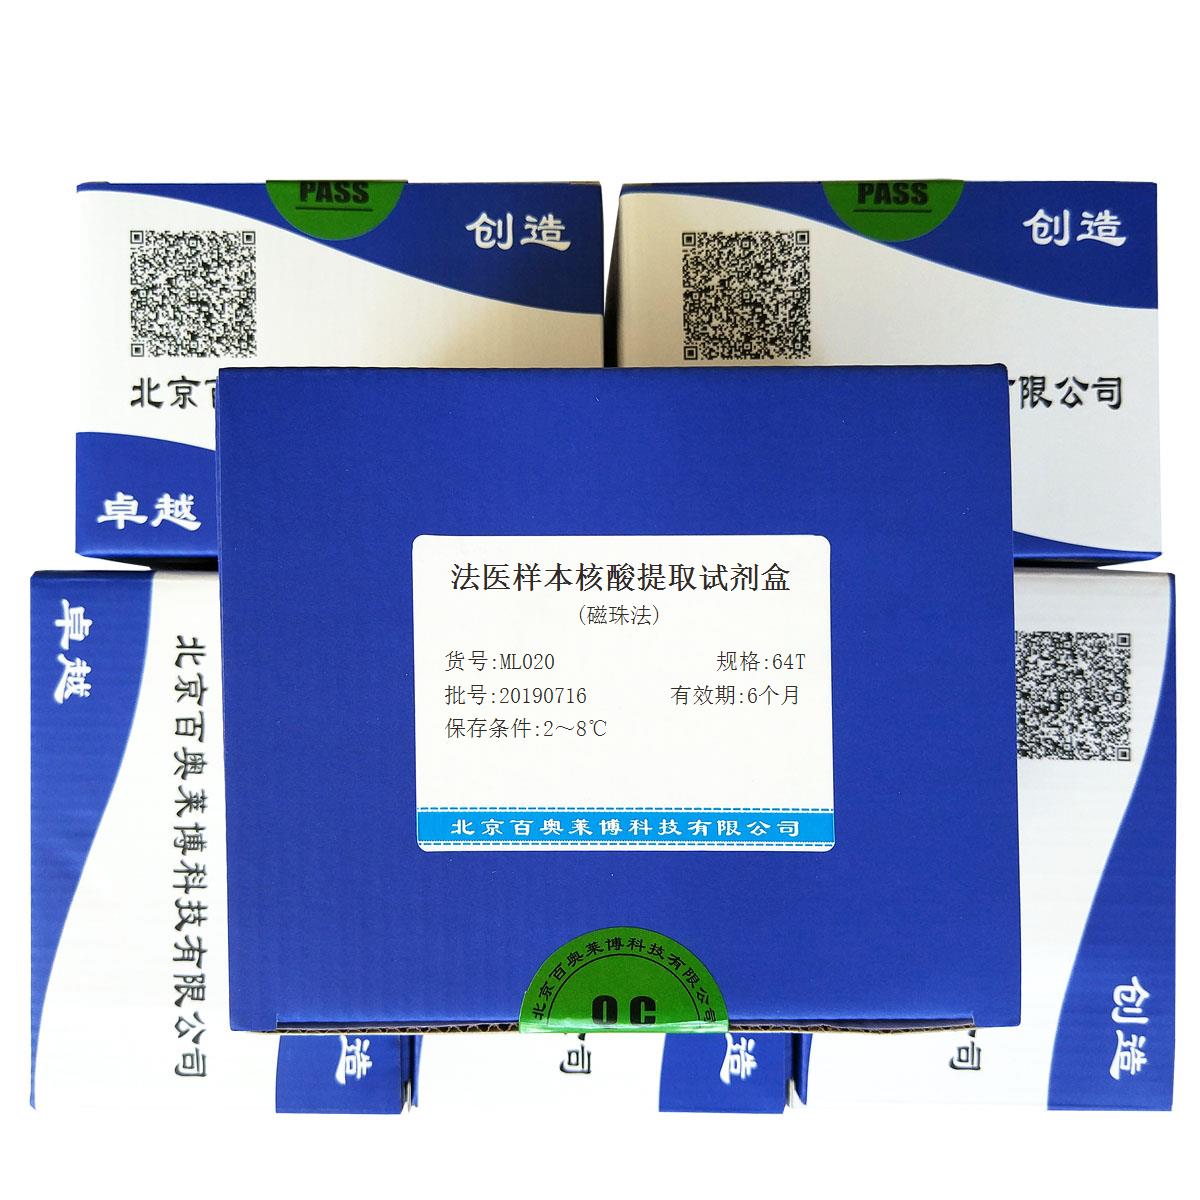 法医样本核酸提取试剂盒(磁珠法)北京现货